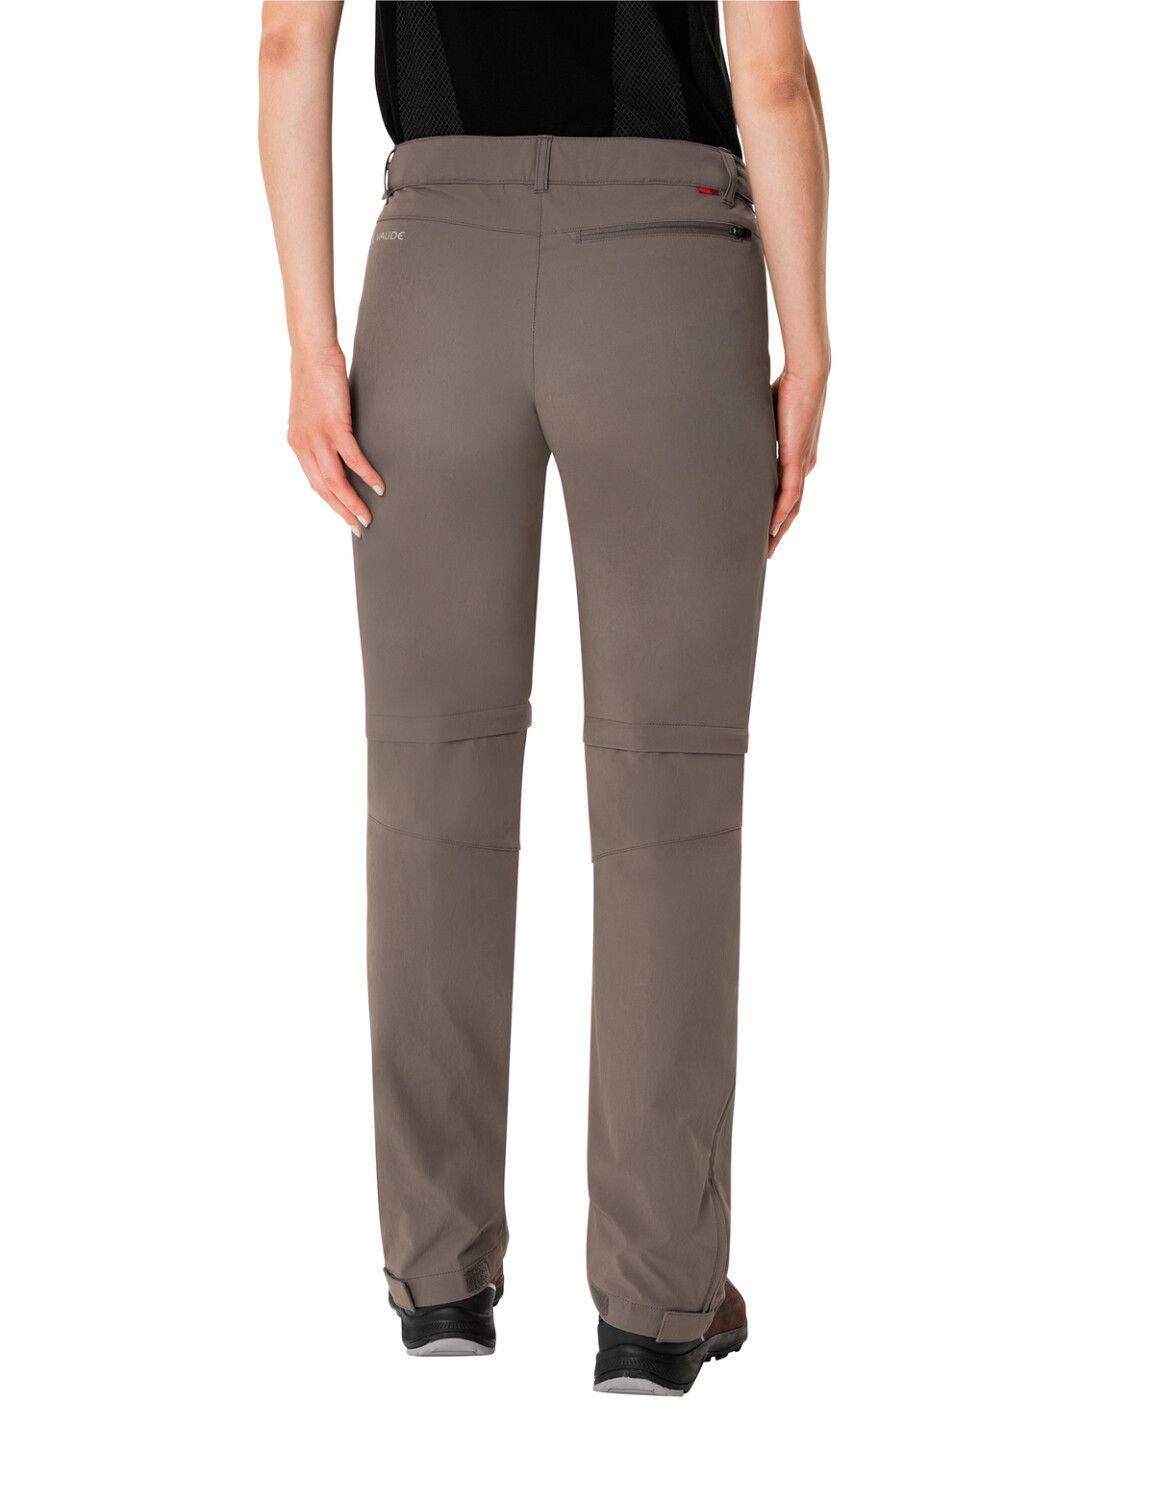 VAUDE Women's Farley Stretch ZO T-Zip Pants (Bild 41)